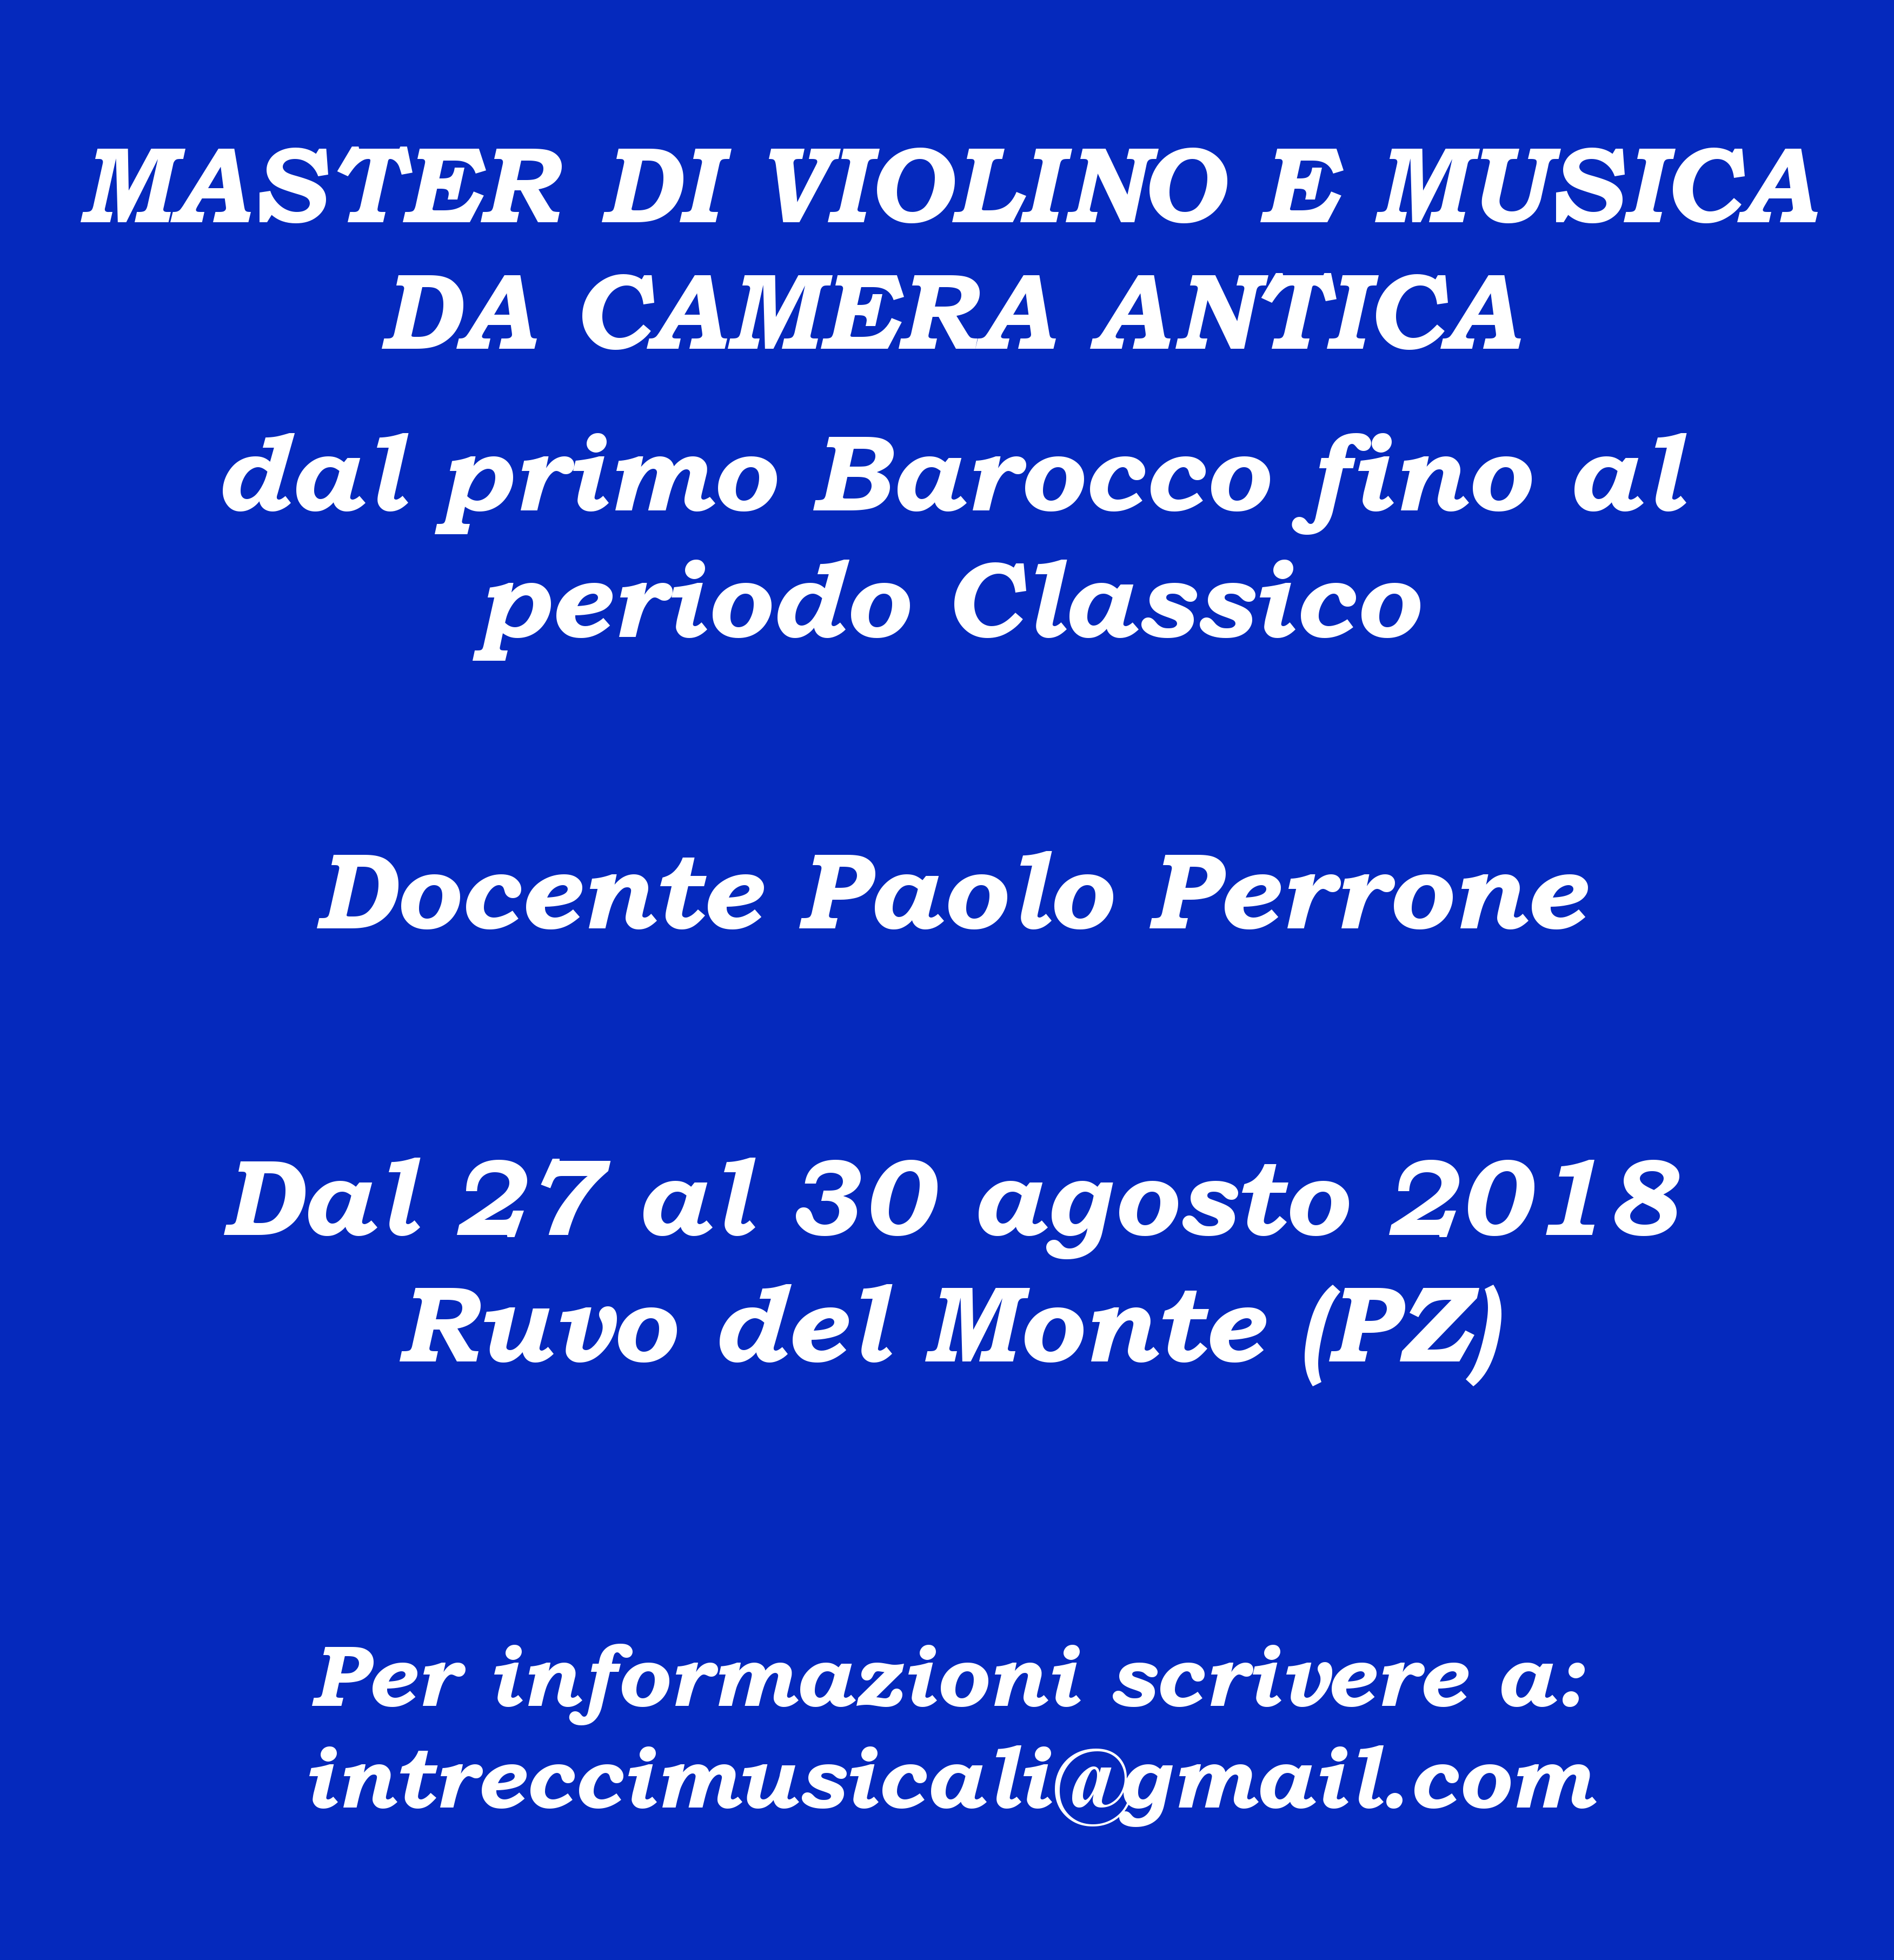 Master class di violino barocco e musica da camera antica